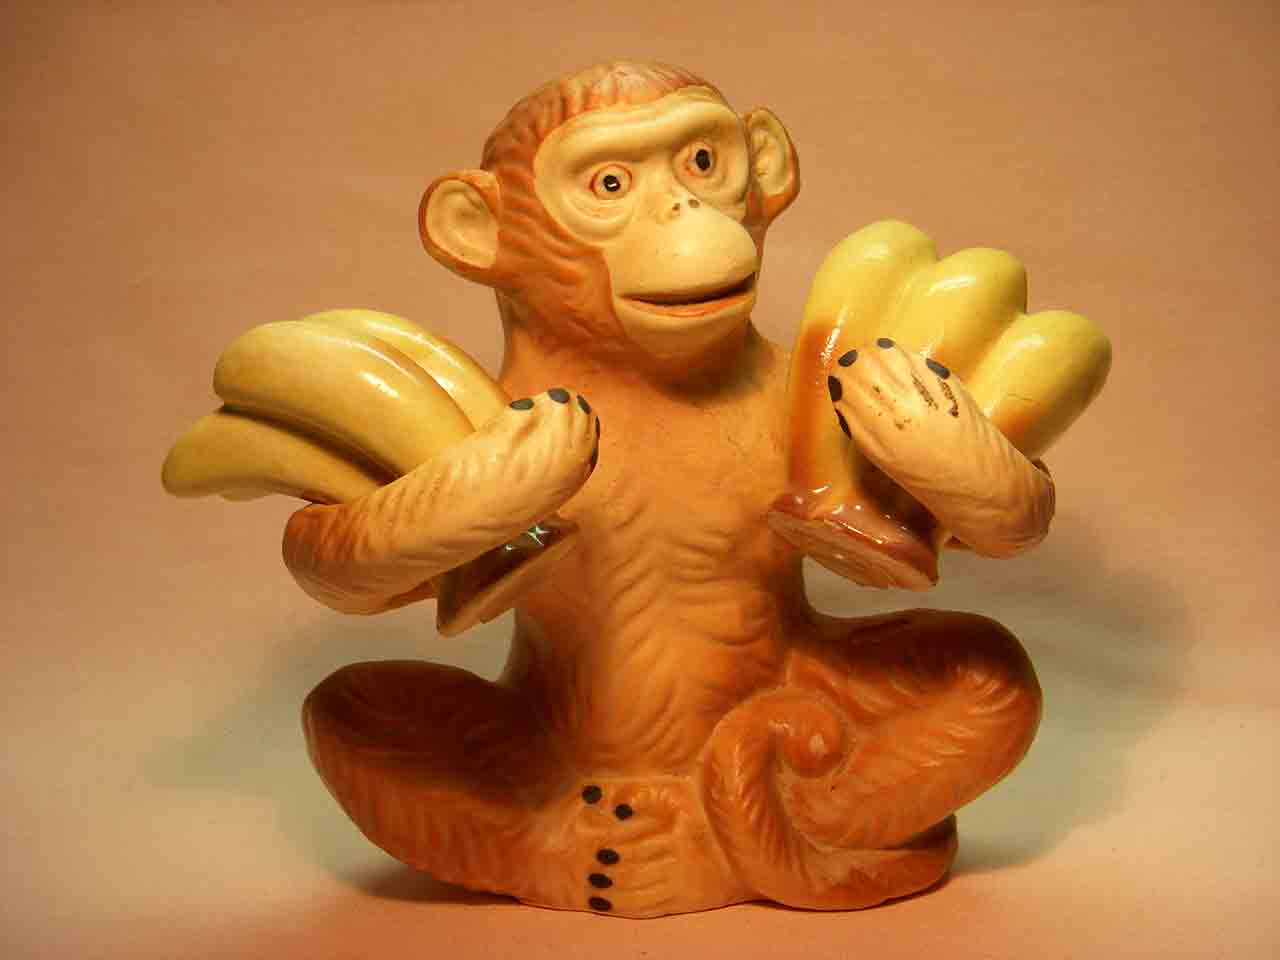 Monkey holding bananas salt and pepper shaker